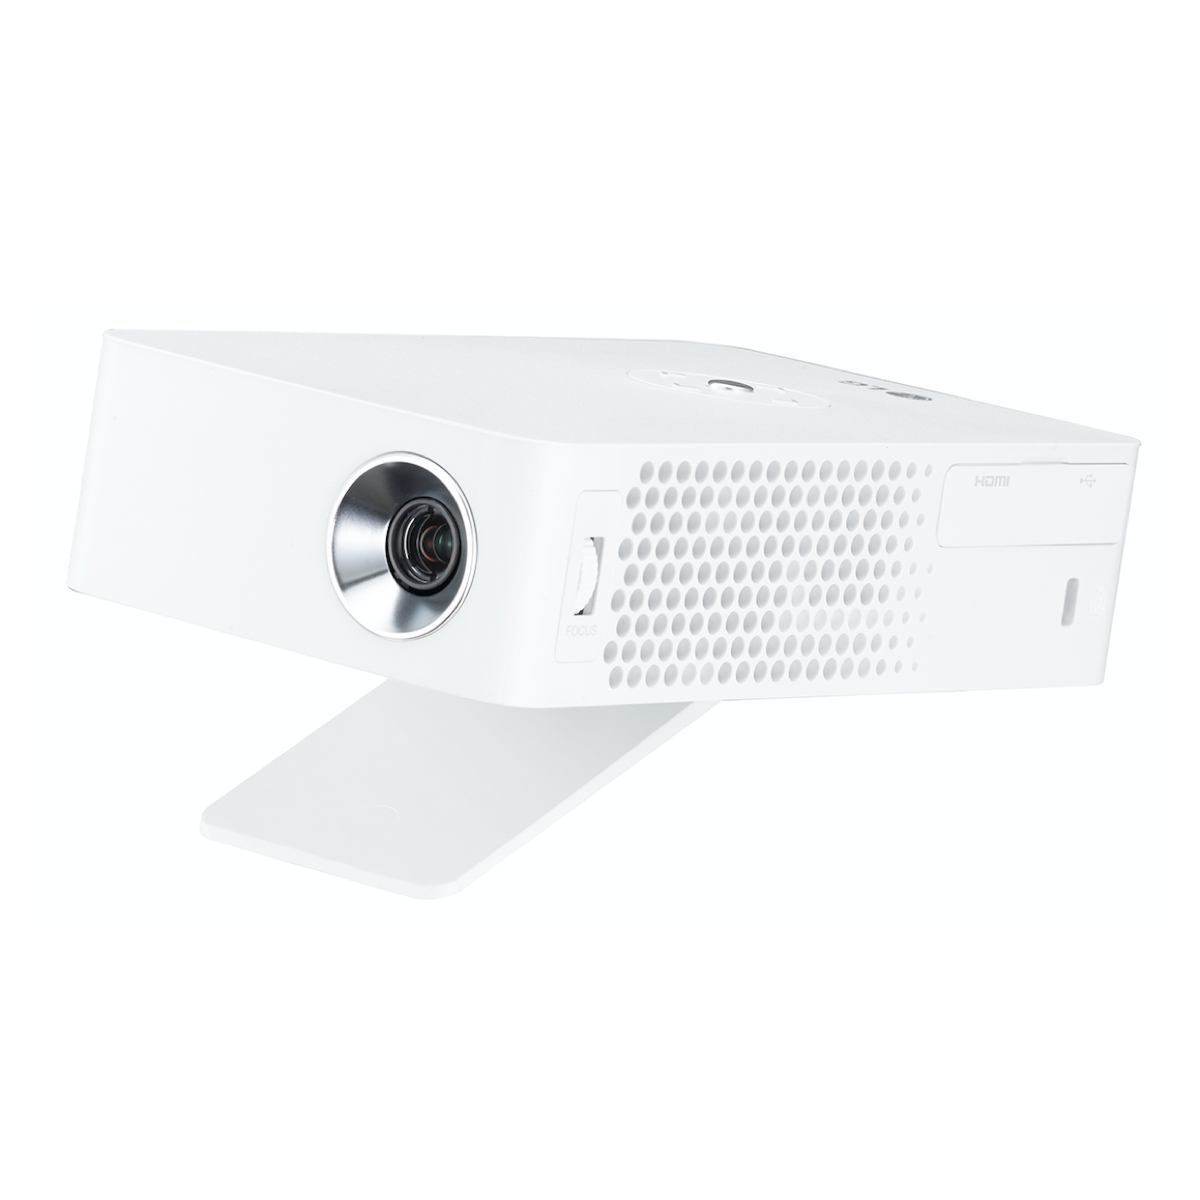 LG Projectors PH30JG - MiniBeam Projector - AVStore